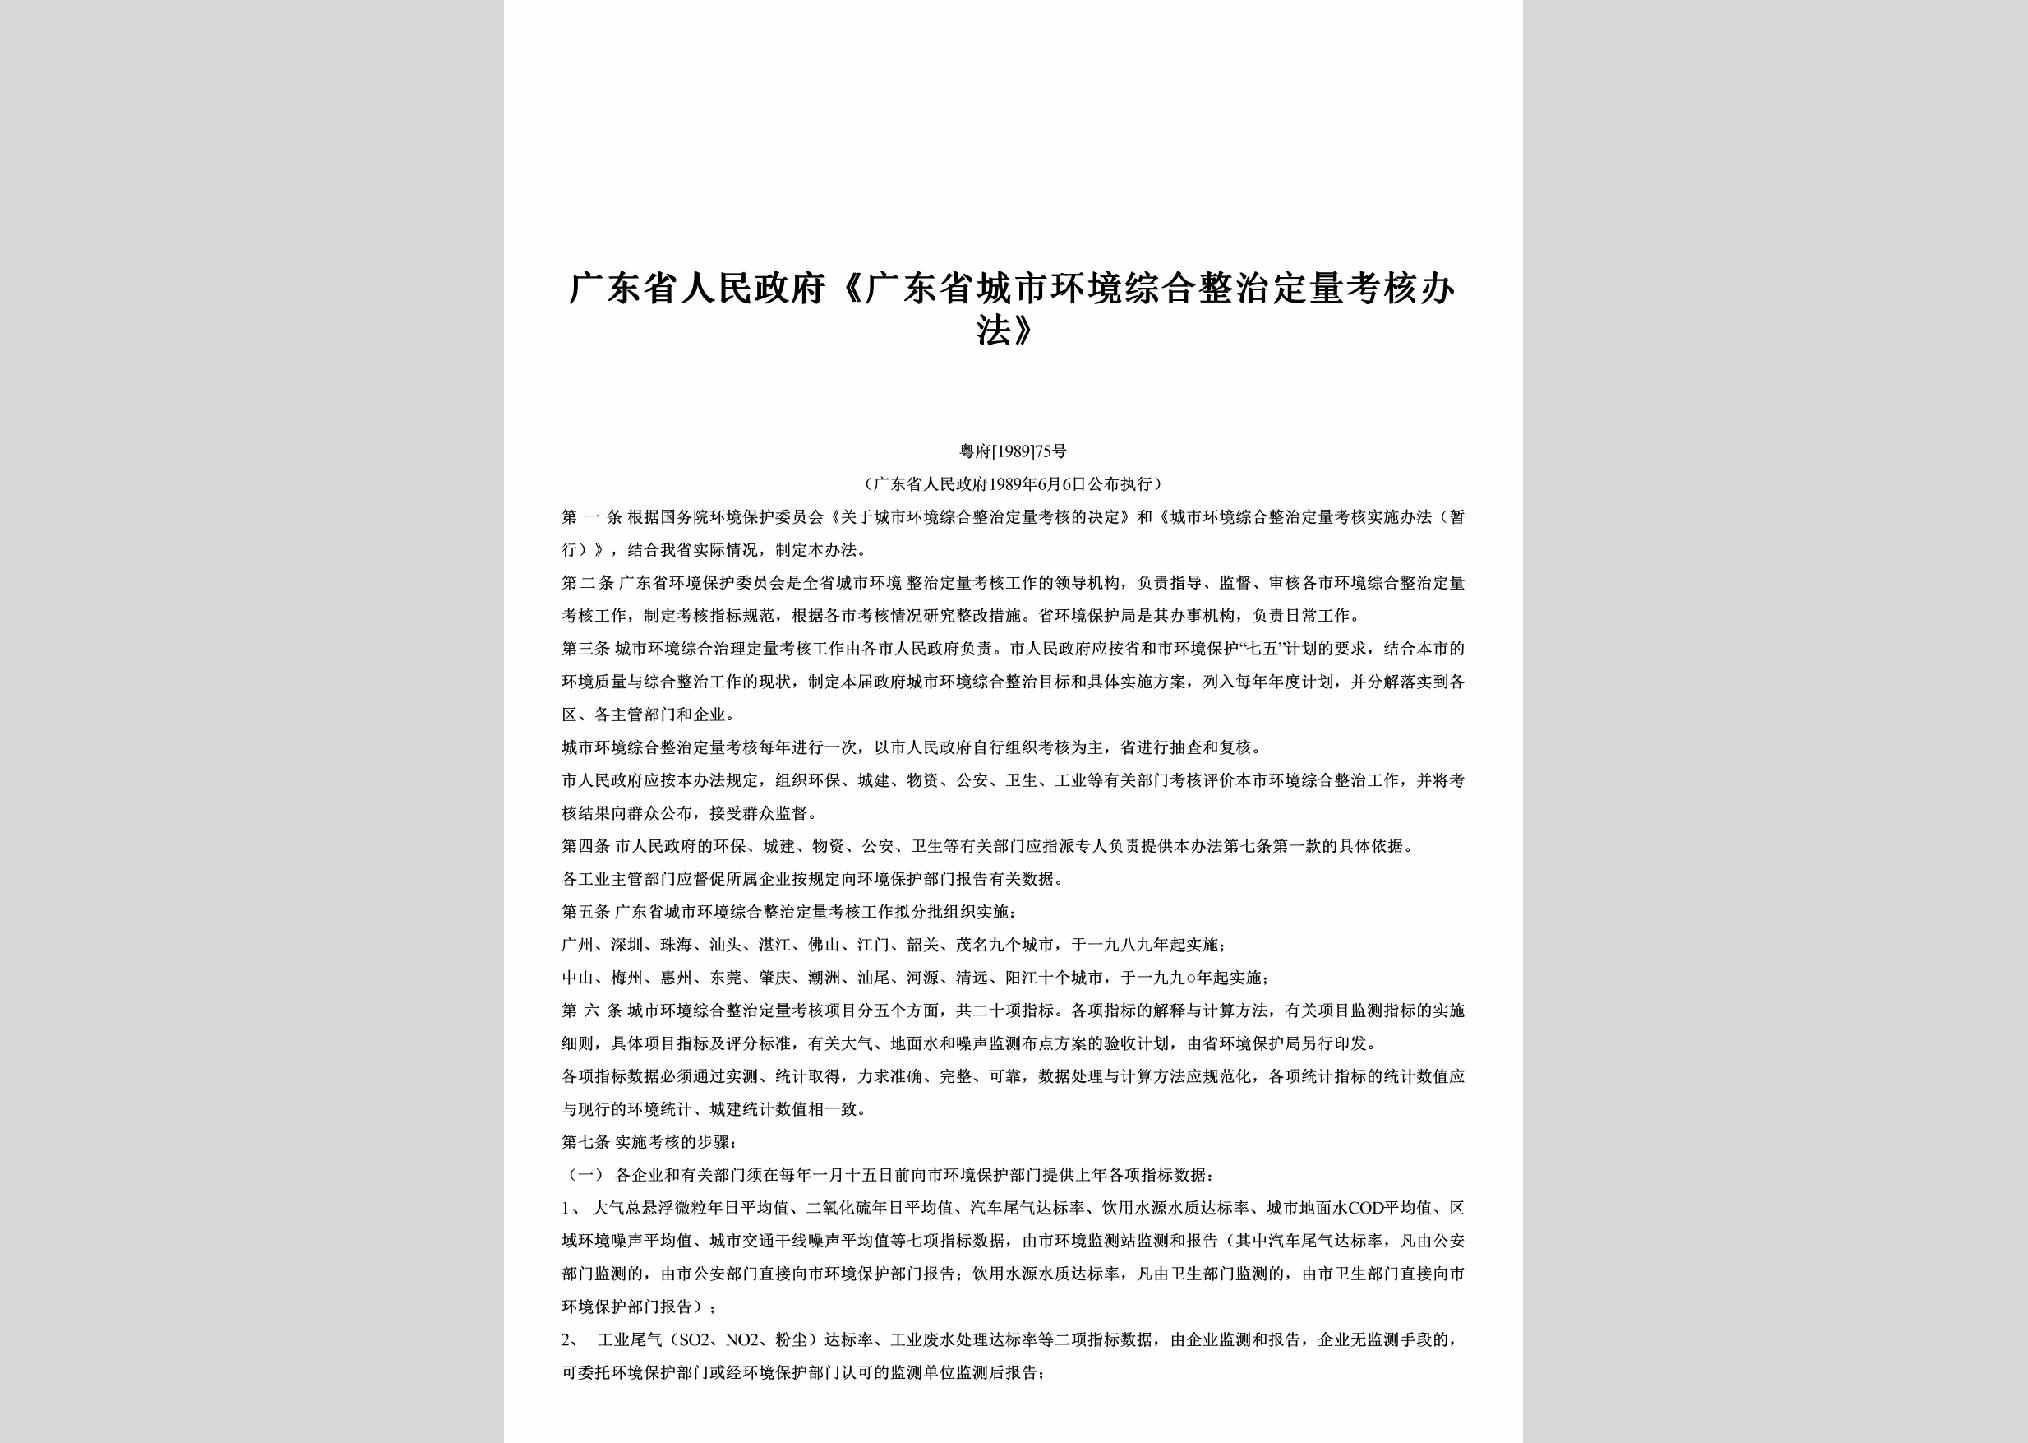 粤府[1989]75号：《广东省城市环境综合整治定量考核办法》